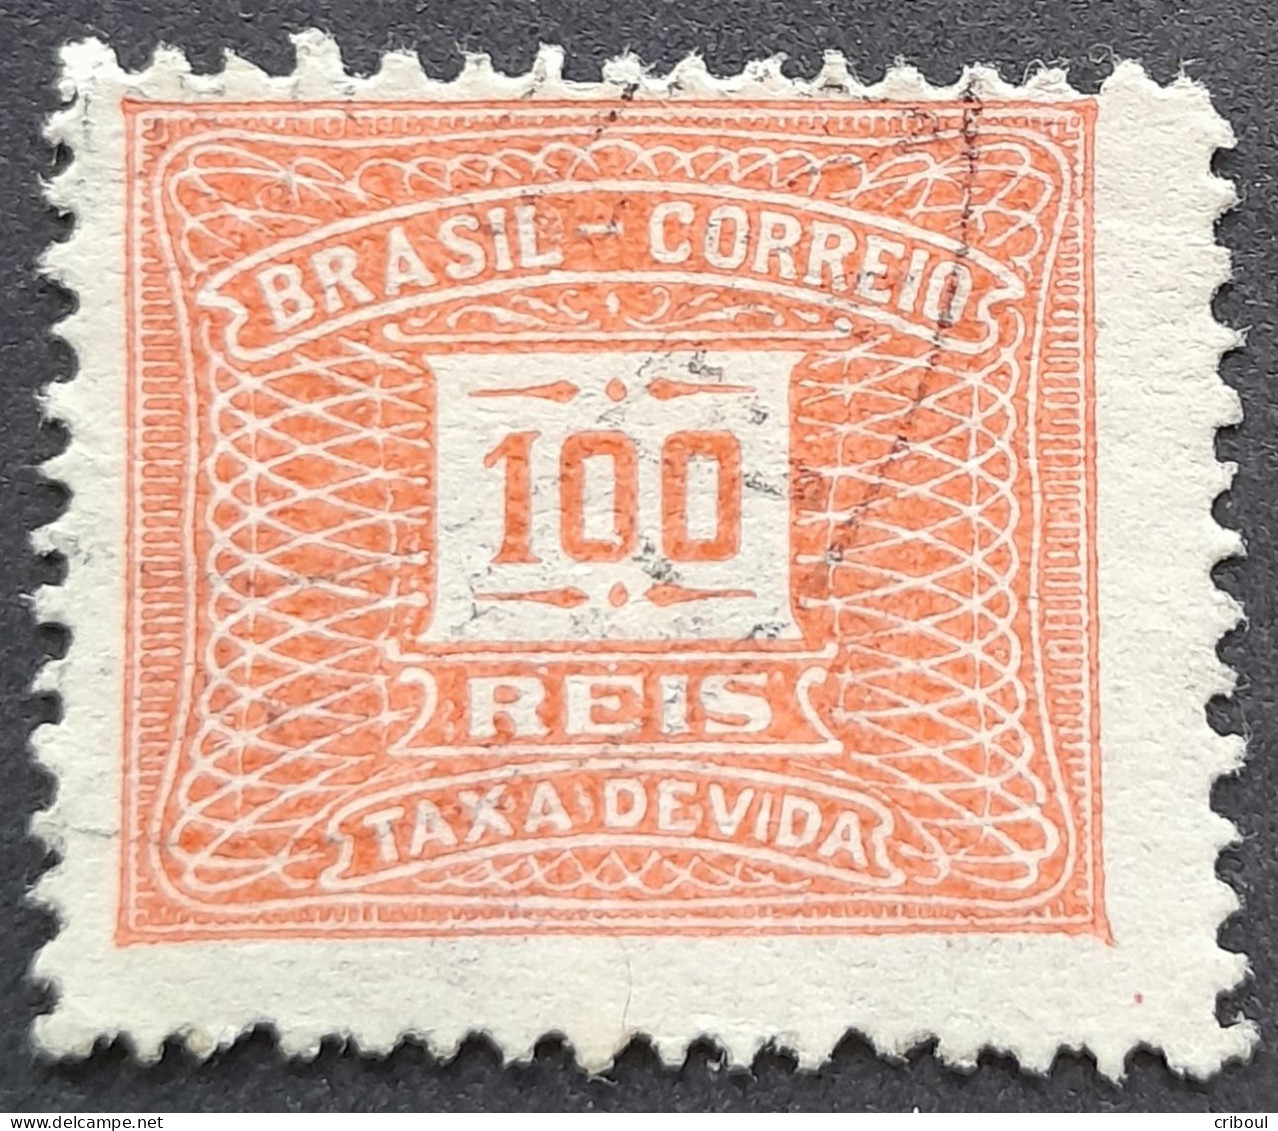 Bresil Brasil Brazil 1919 Taxe Tax Taxa Yvert 44d O Used - Segnatasse